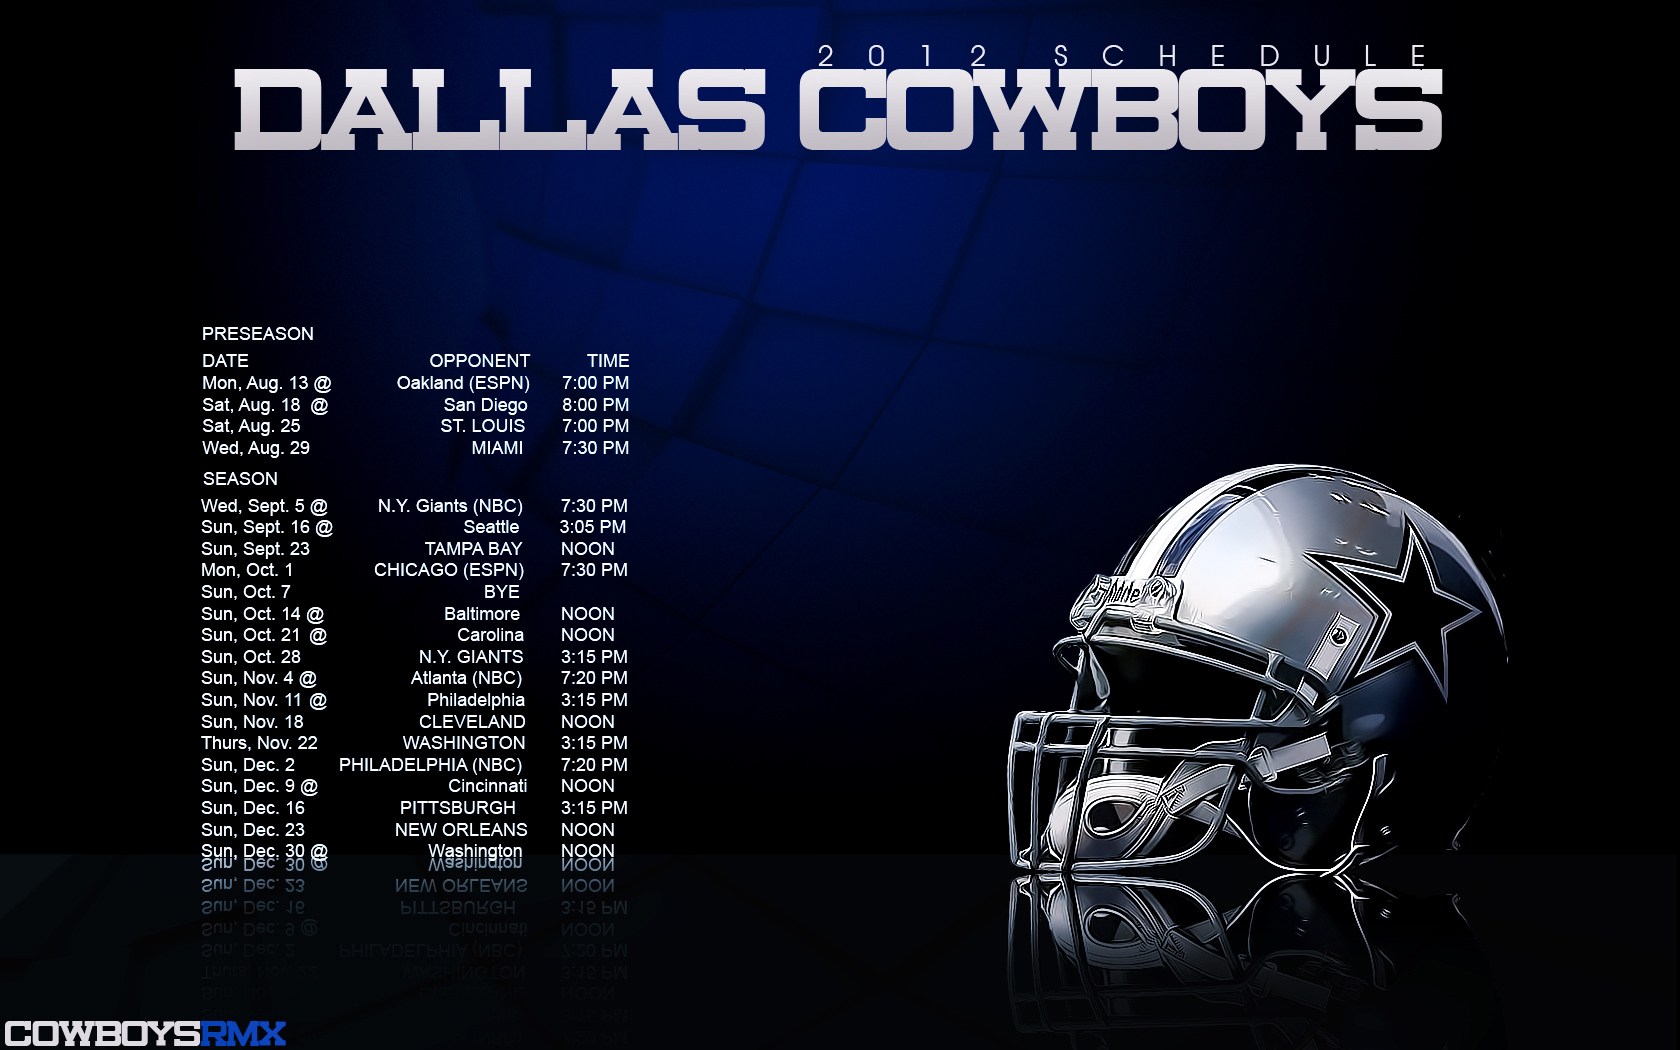 Dallas cowboys schedule wallpaper - SF Wallpaper